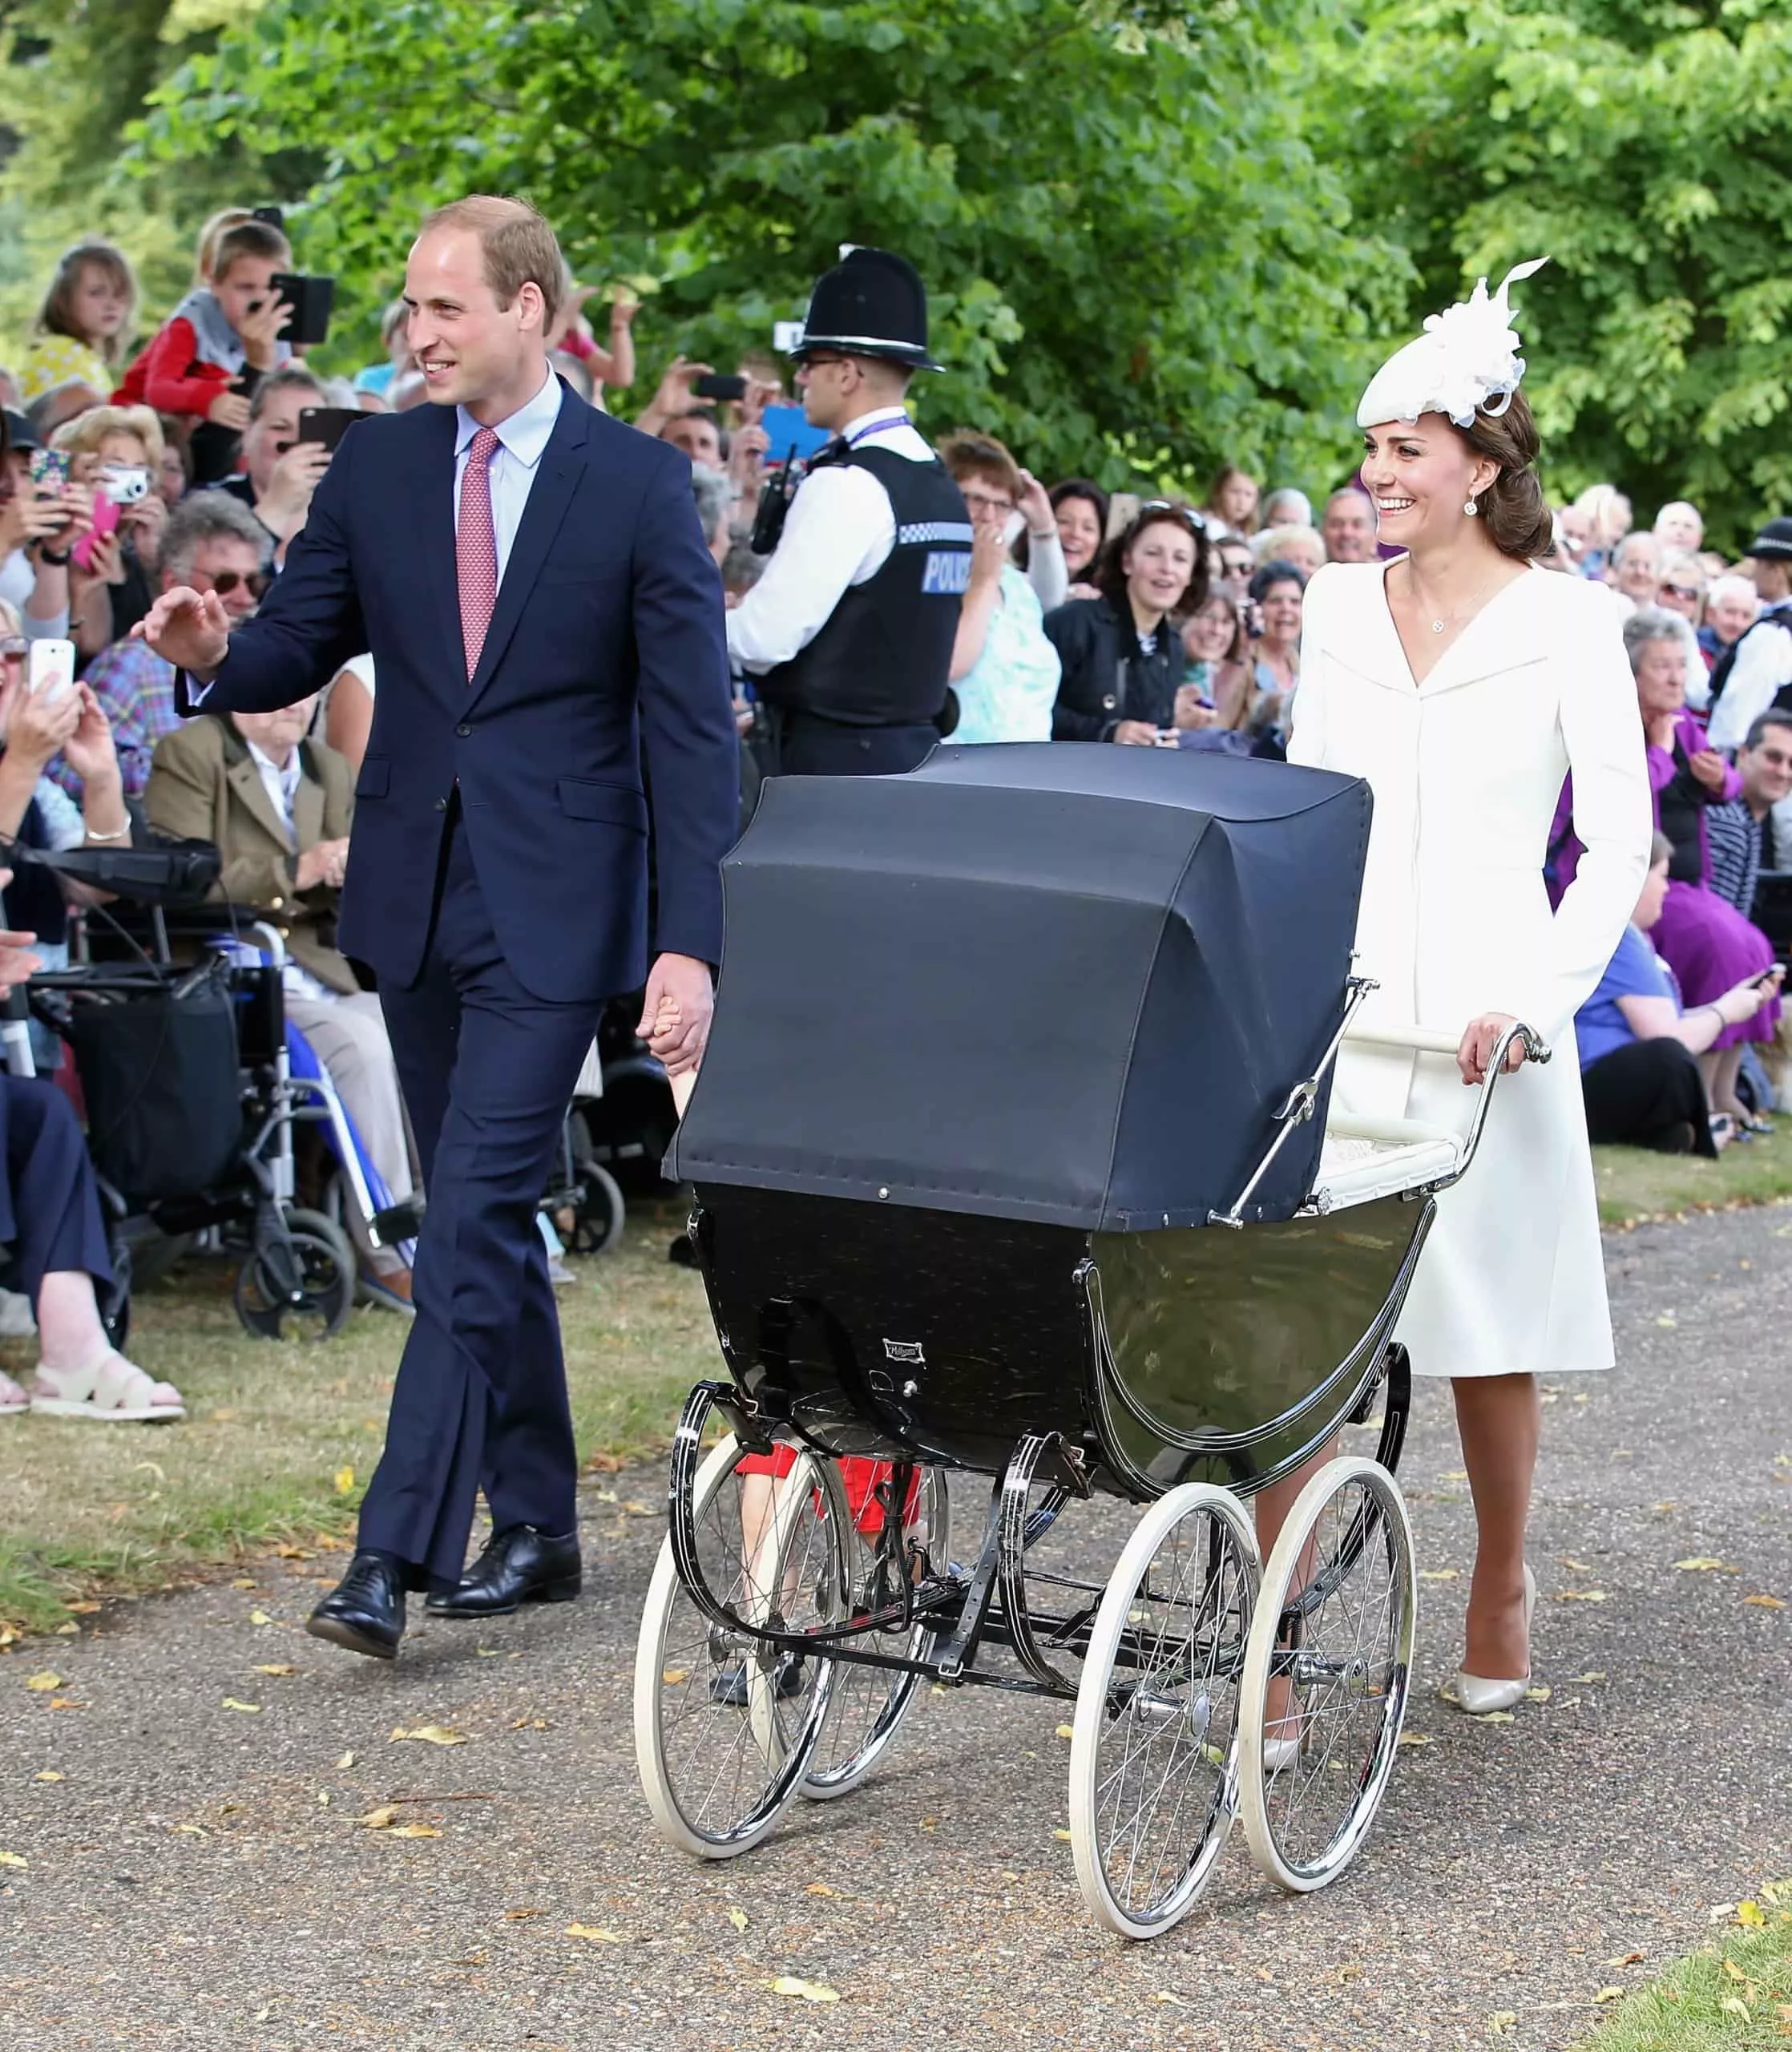 O carrinho de bebê usado por membros da realeza britânica 